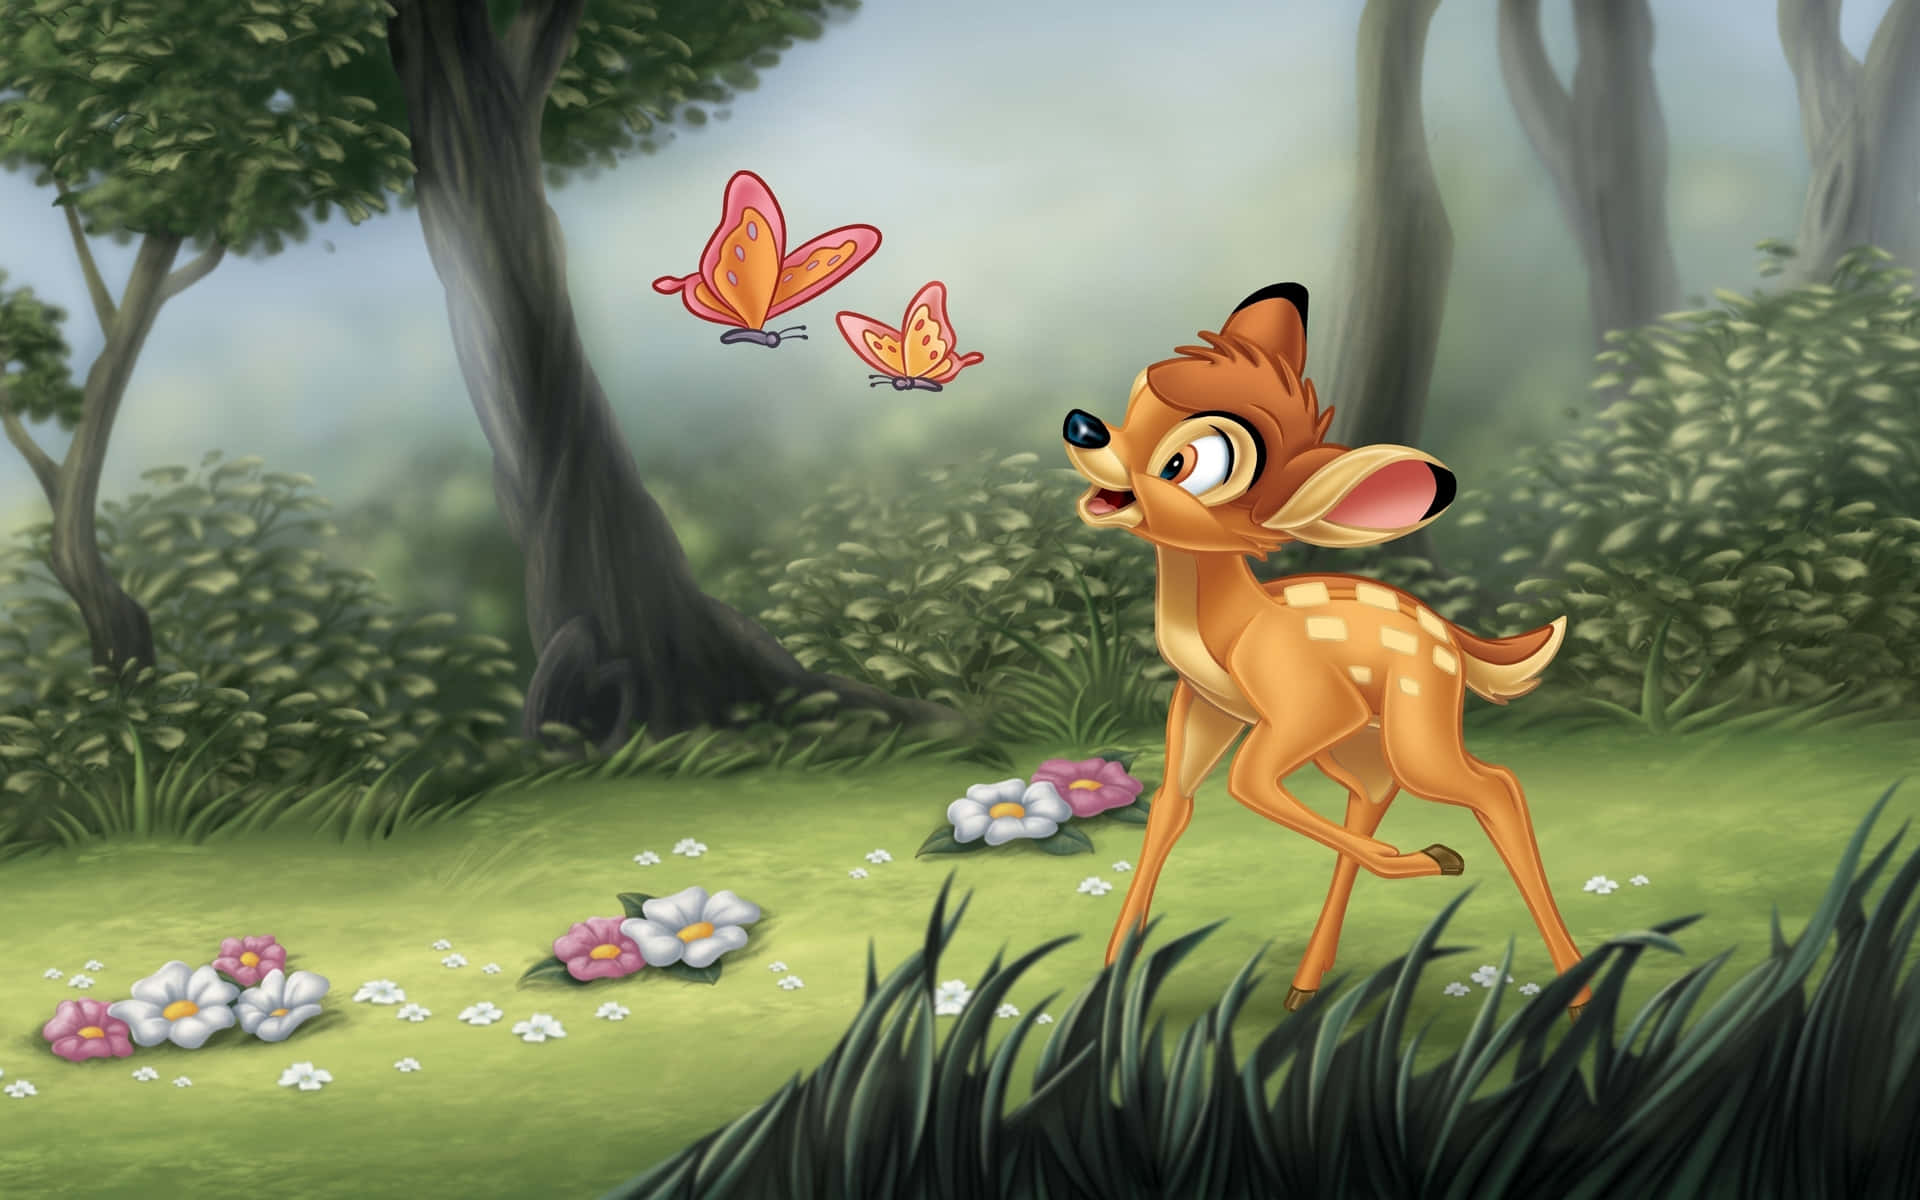 Entraen Un Mundo De Encanto Con Bambi.